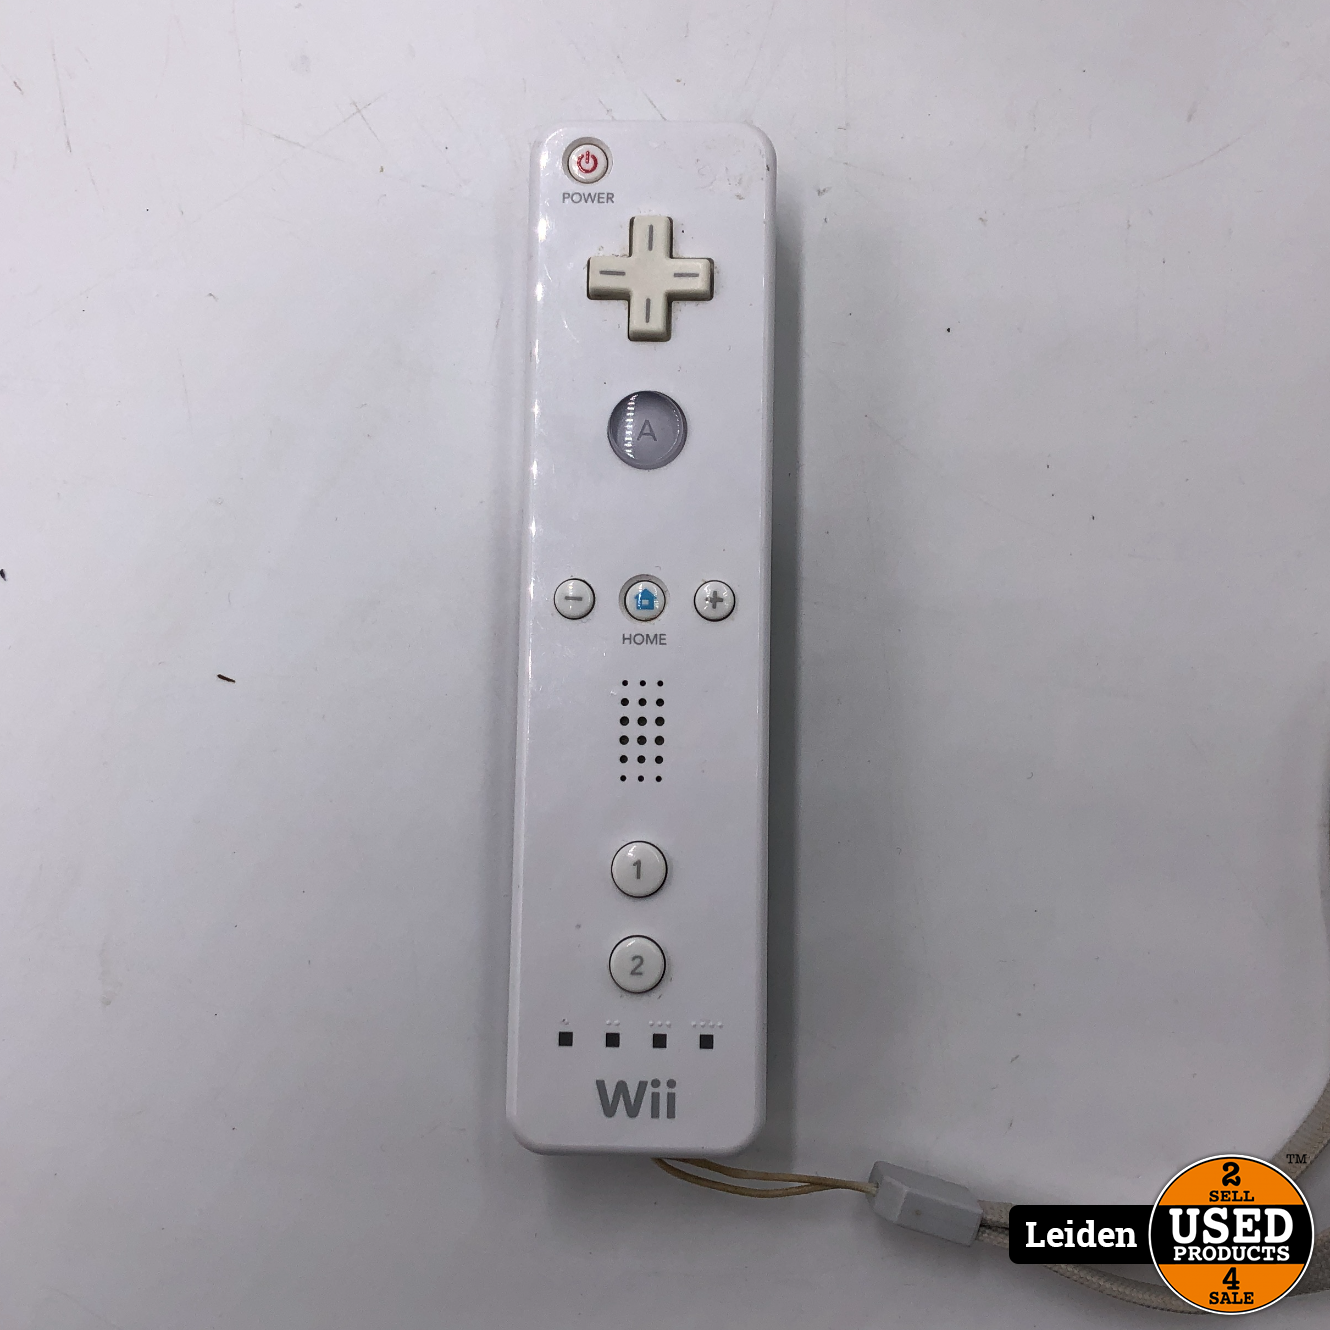 Overeenkomstig Bezighouden experimenteel Nintendo Wii - Wit - Used Products Leiden